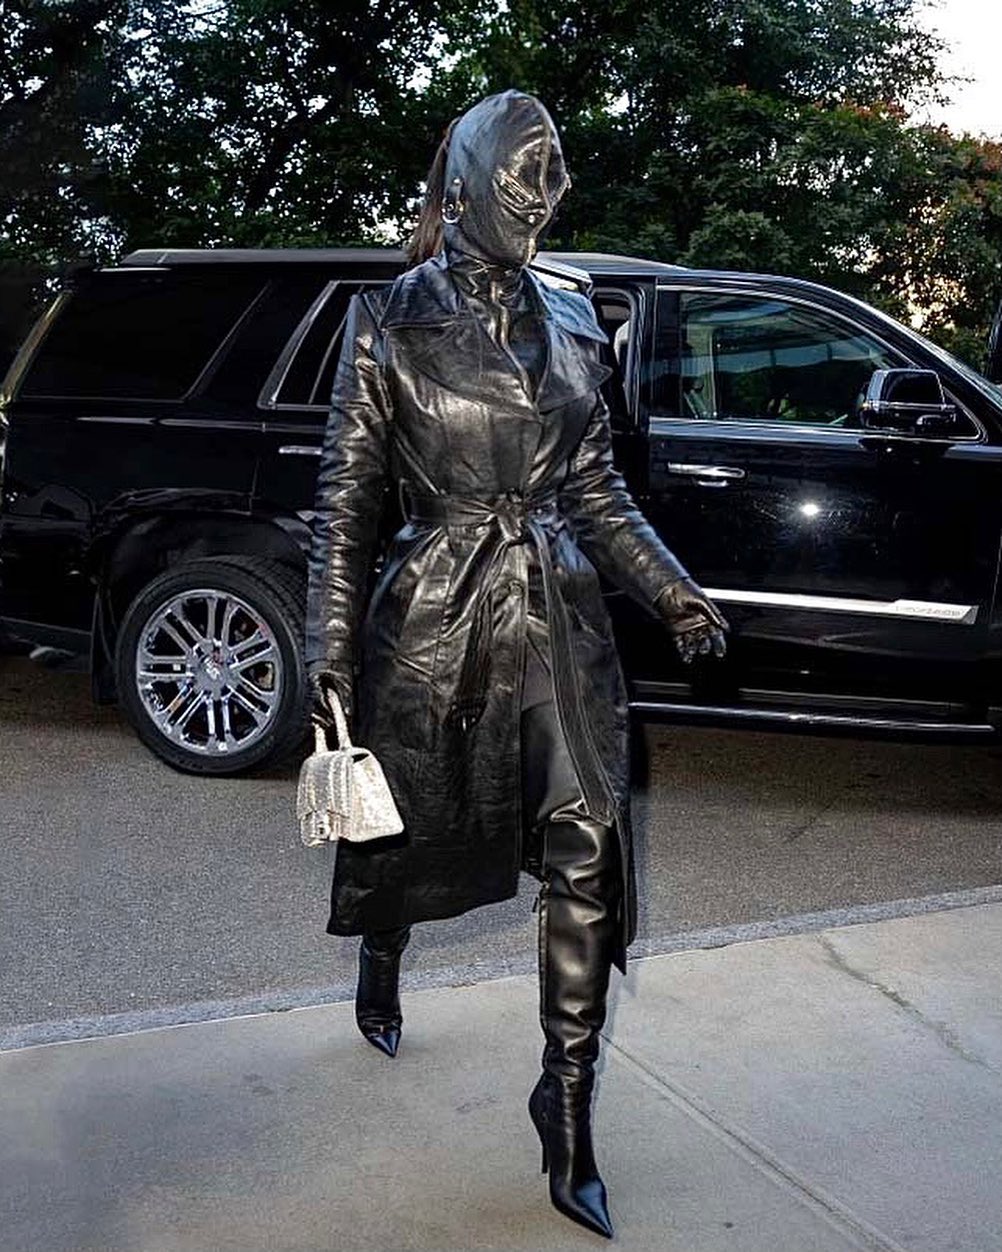 Trước đó, Kim cũng xuất hiện với một bộ đồ da kín mít tại khách sạn để chuẩn bị cho sự kiện Met Gala 2021.